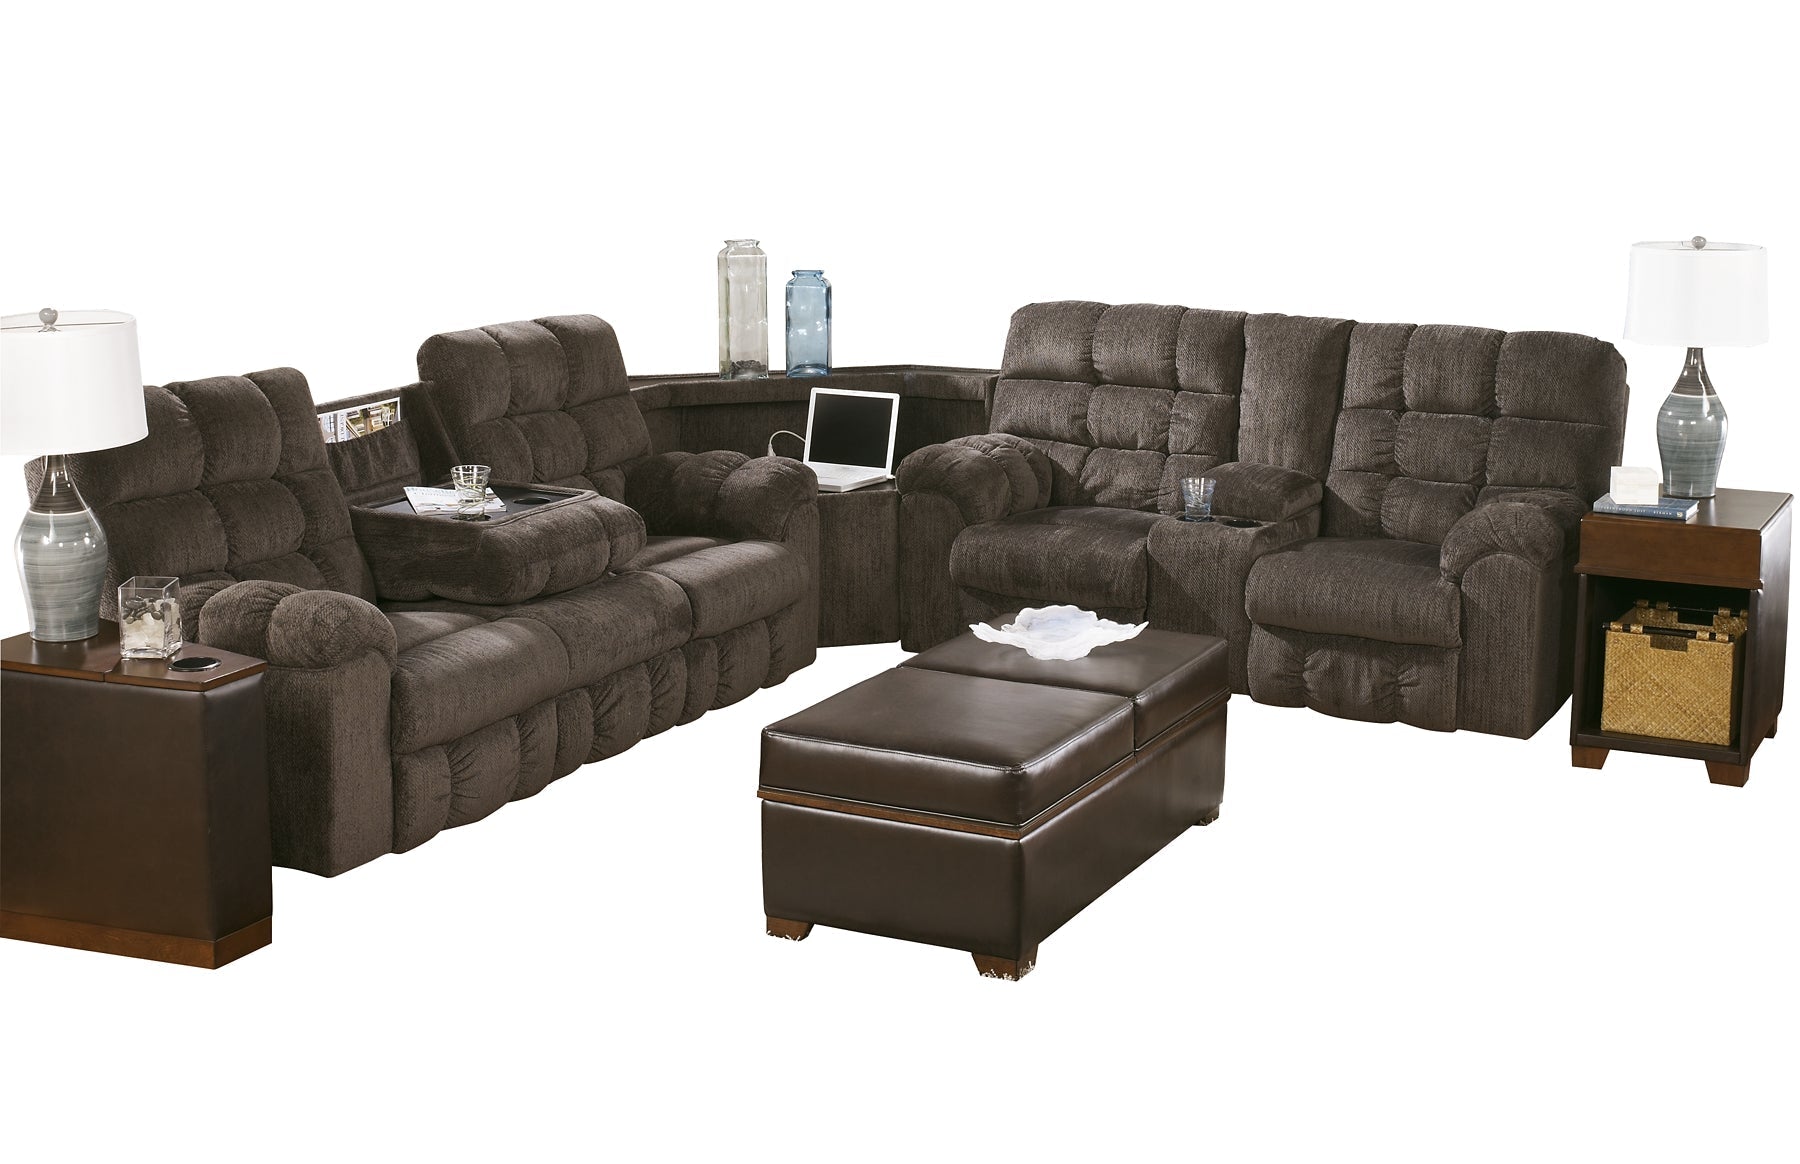 Acieona 3-Piece Reclining Sectional at Towne & Country Furniture (AL) furniture, home furniture, home decor, sofa, bedding